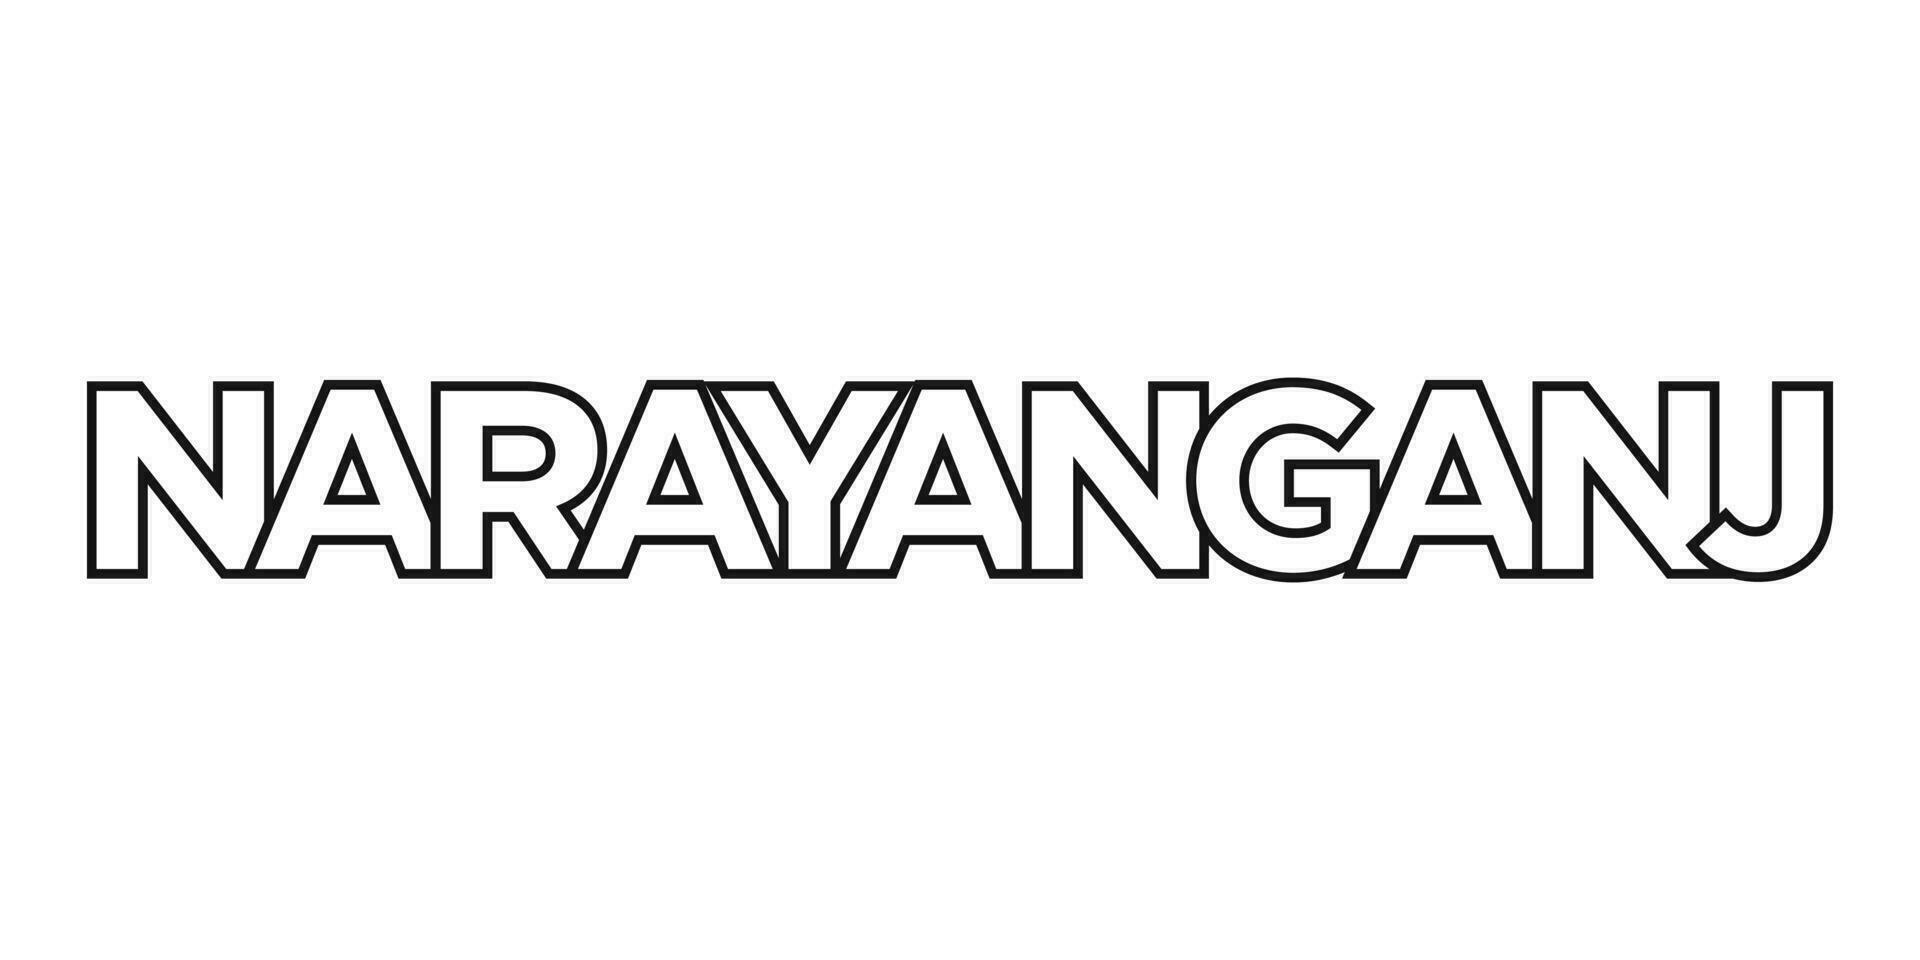 Narayanganj dans le bangladesh emblème. le conception Caractéristiques une géométrique style, vecteur illustration avec audacieux typographie dans une moderne Police de caractère. le graphique slogan caractères.